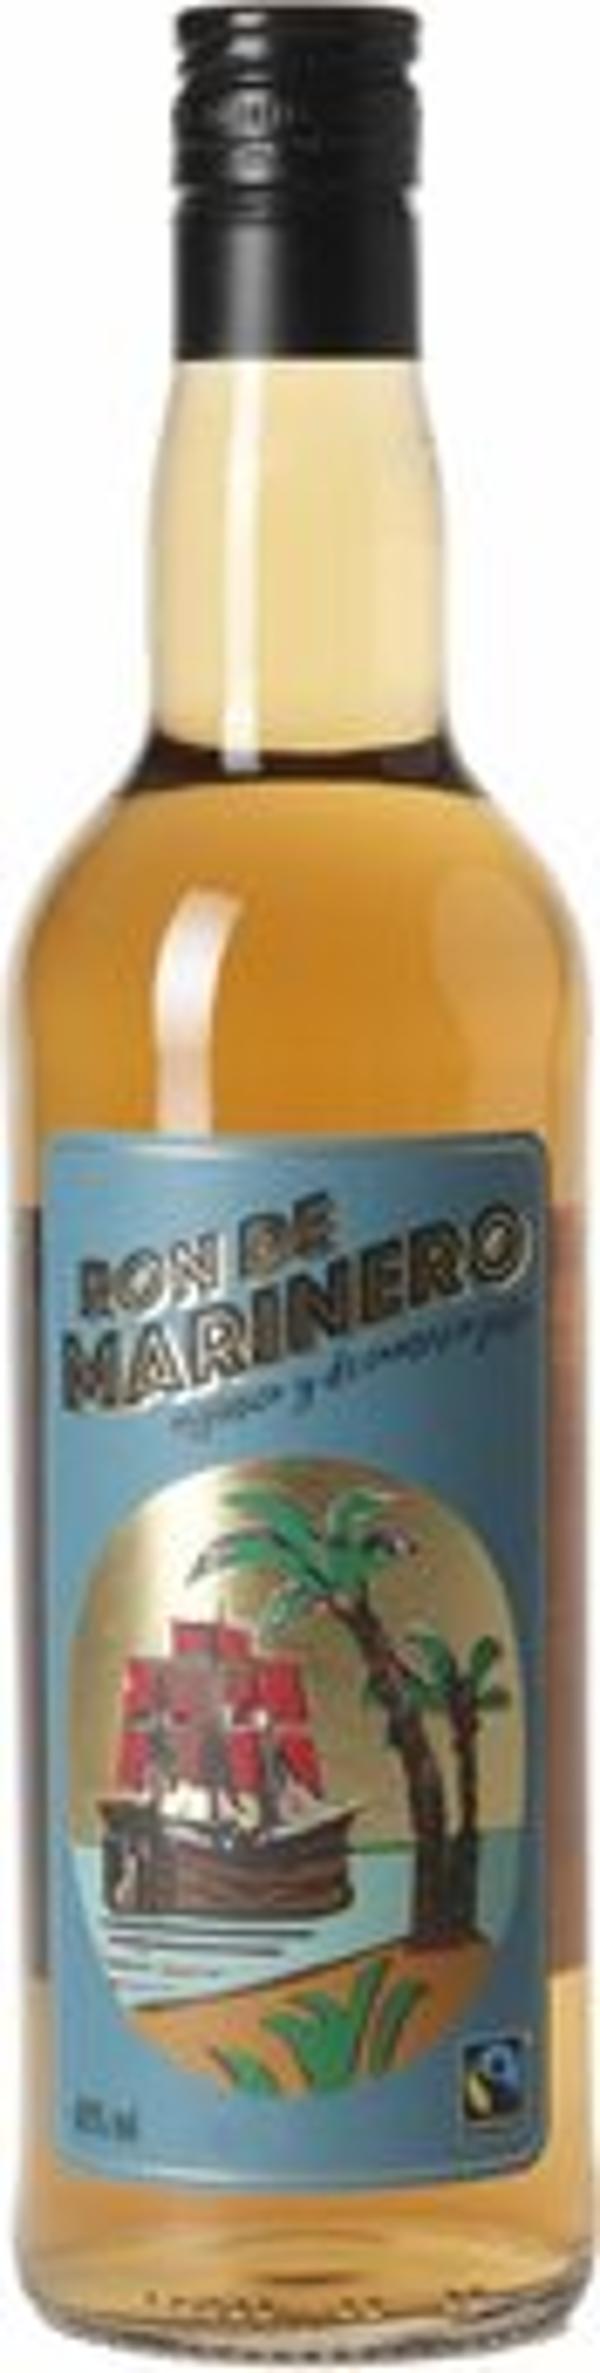 Produktfoto zu Rum de Marinero fair trade